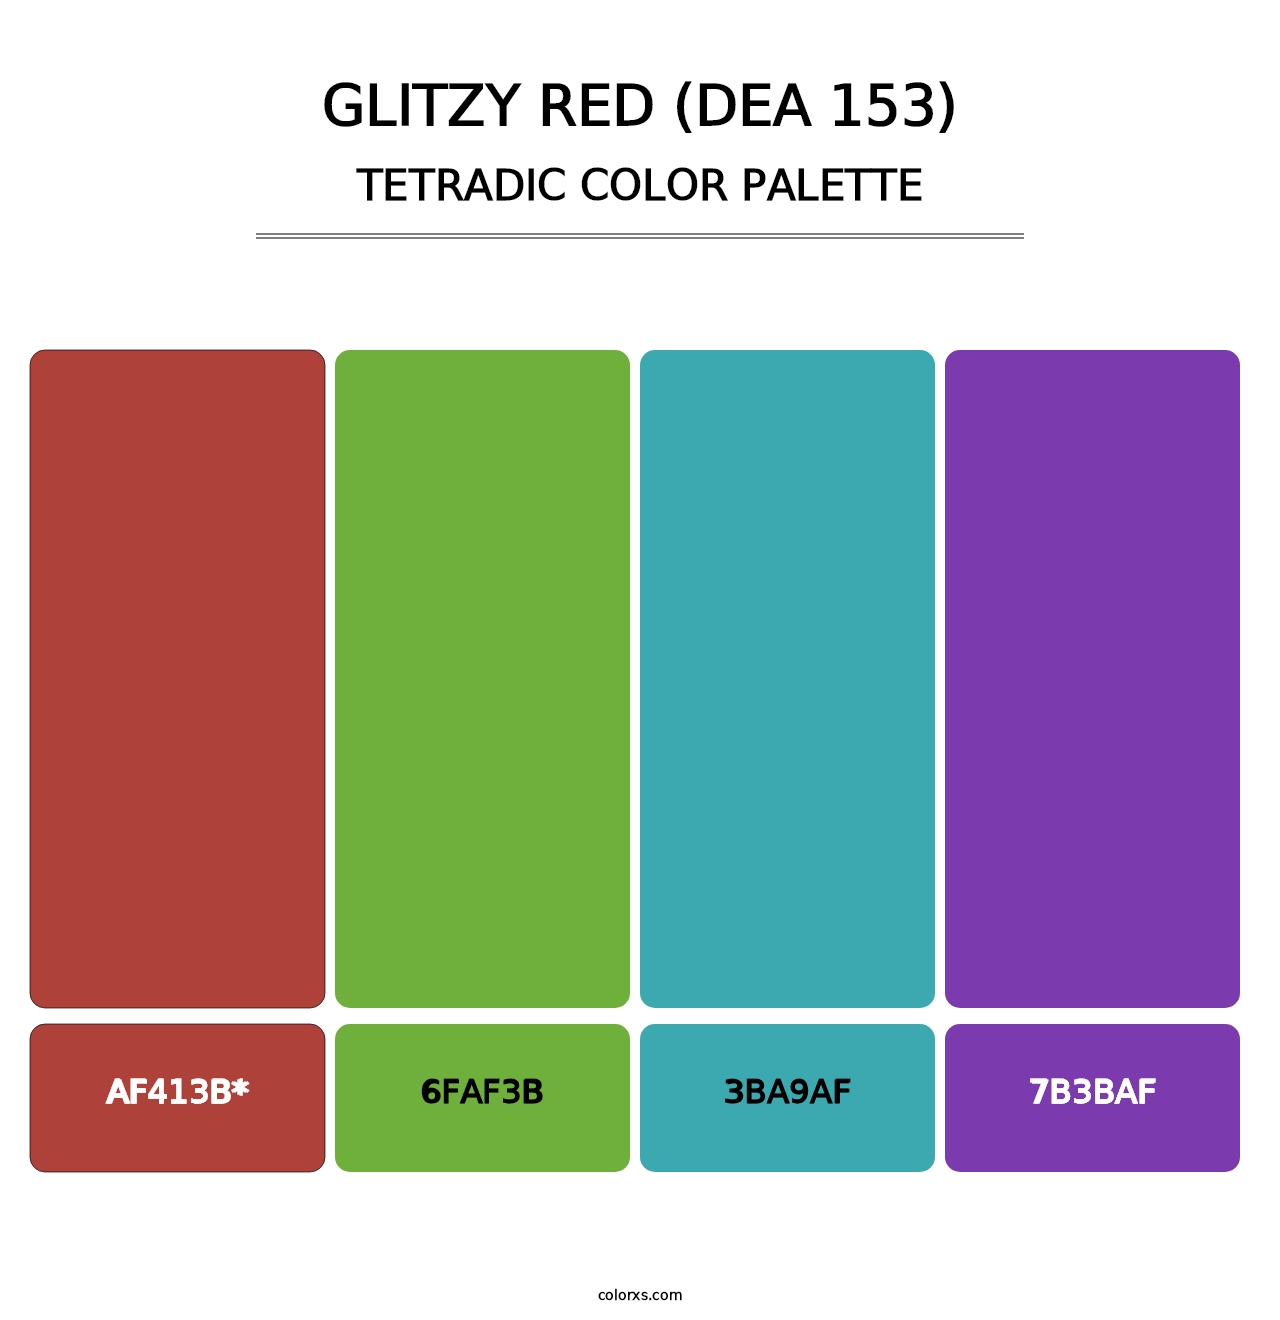 Glitzy Red (DEA 153) - Tetradic Color Palette